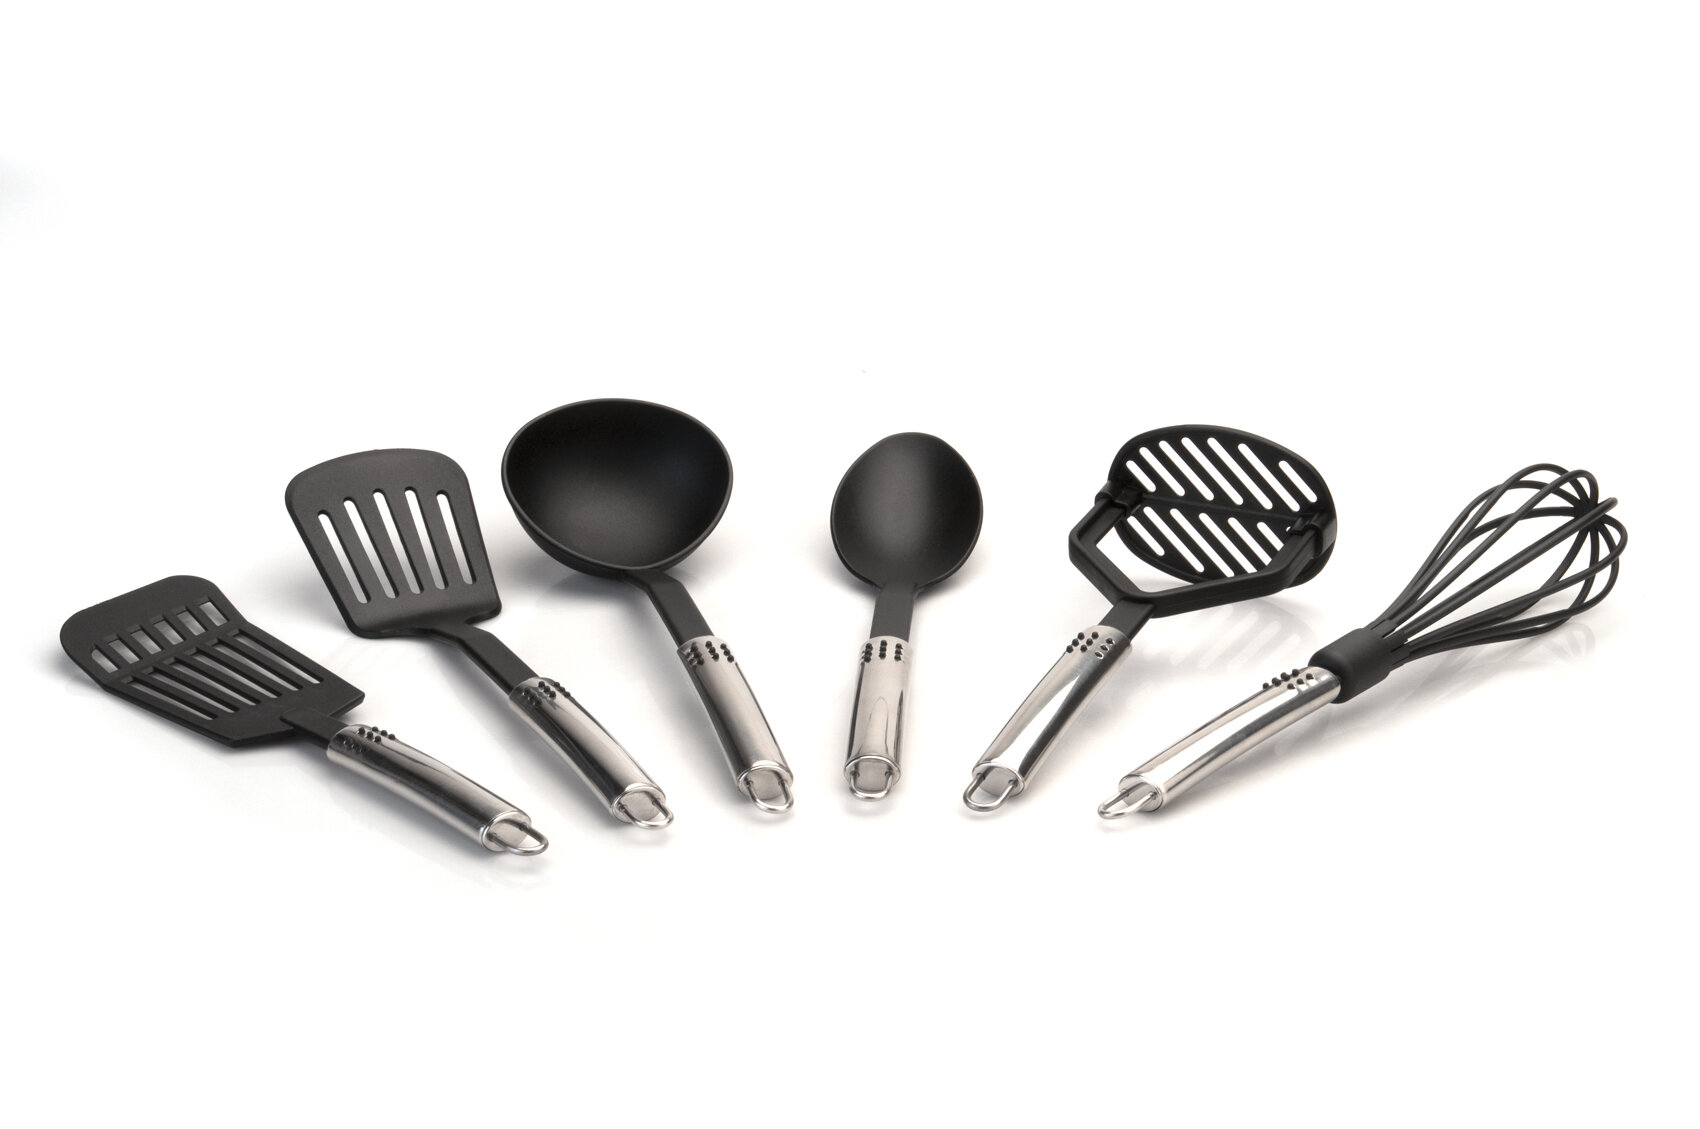 https://assets.wfcdn.com/im/09691538/compr-r85/1416/14163087/berghoff-international-6-piece-munich-kitchen-utensil-set.jpg